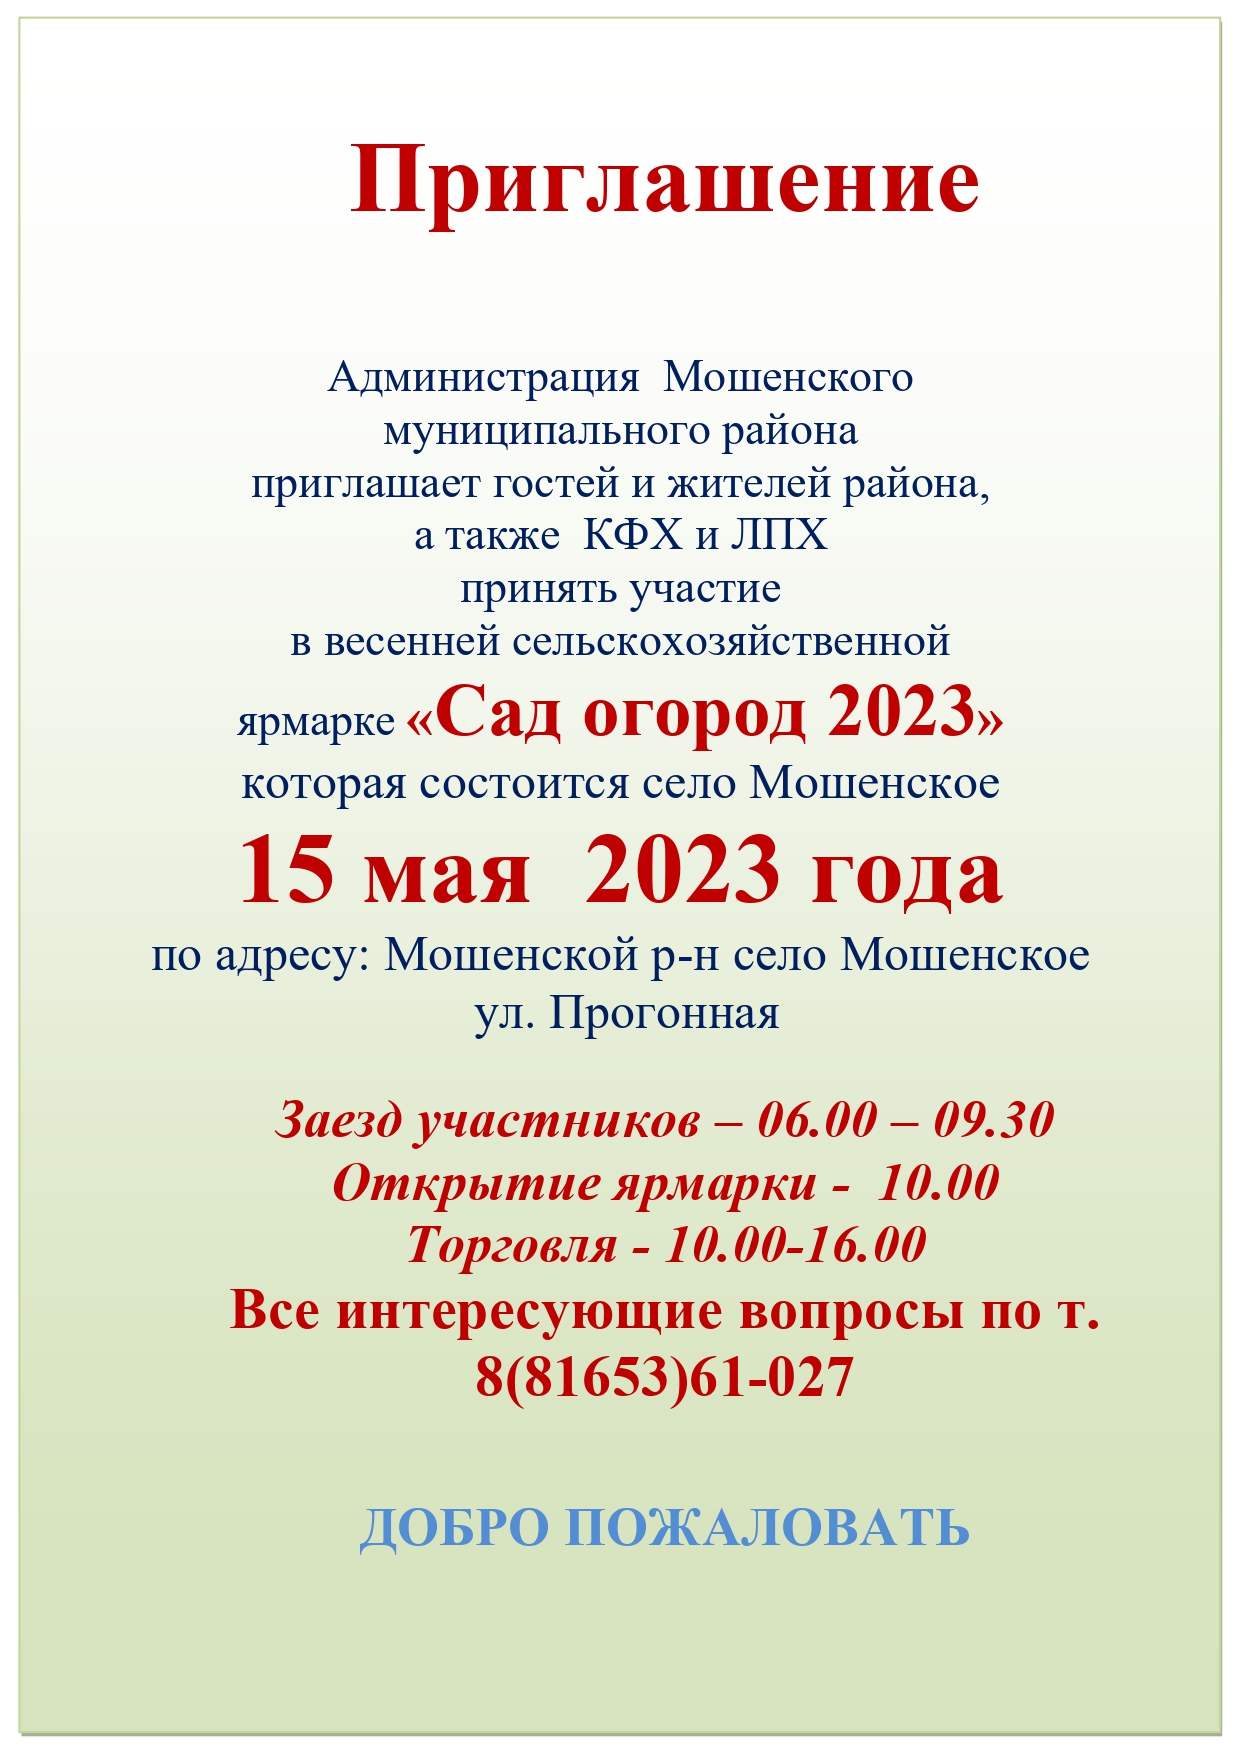 Ярмарка «Сад огород 2023».